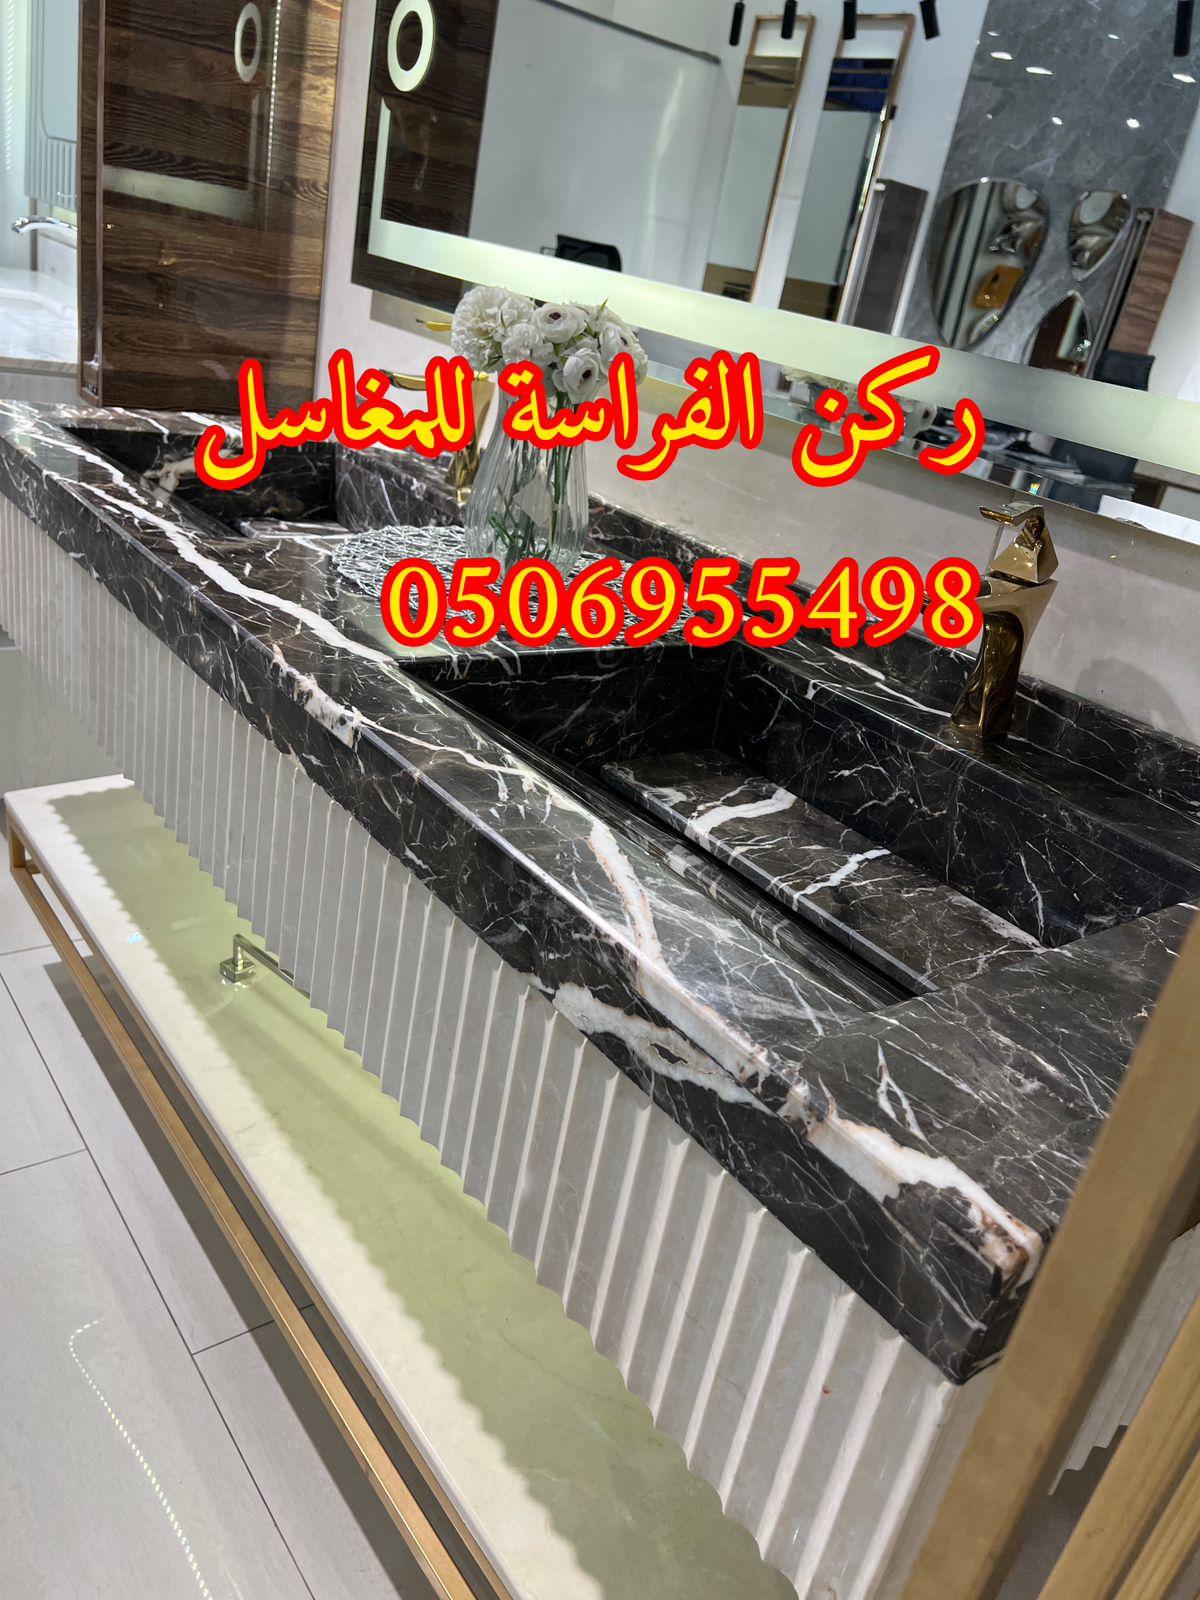 ديكورات مغاسل حمامات رخام في الرياض,0506955498 661701804